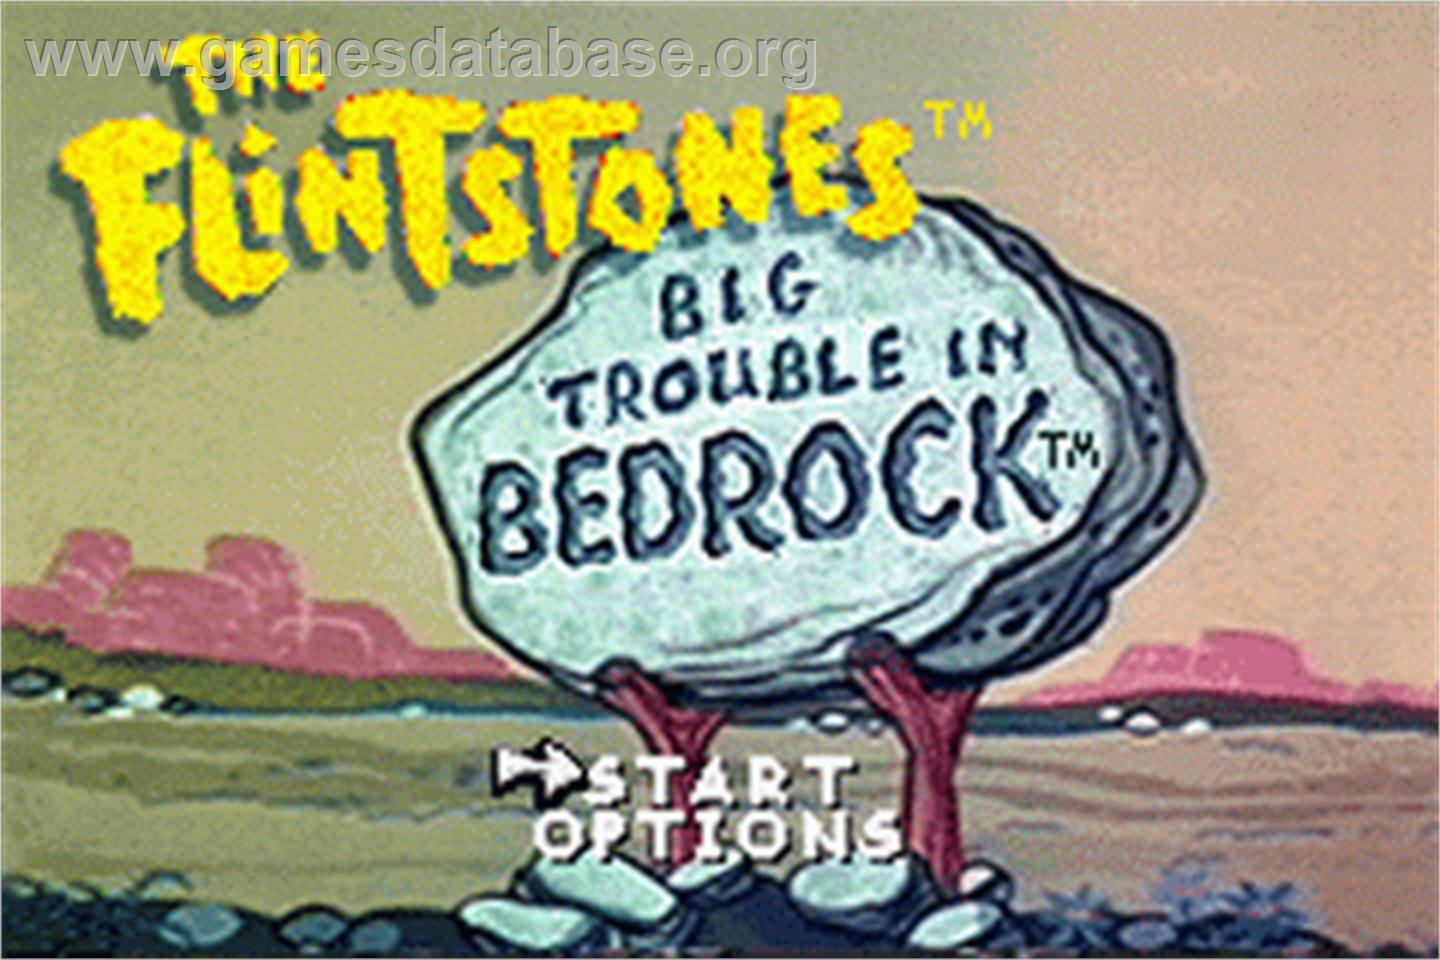 Flintstones: Big Trouble in Bedrock - Nintendo Game Boy Advance - Artwork - Title Screen